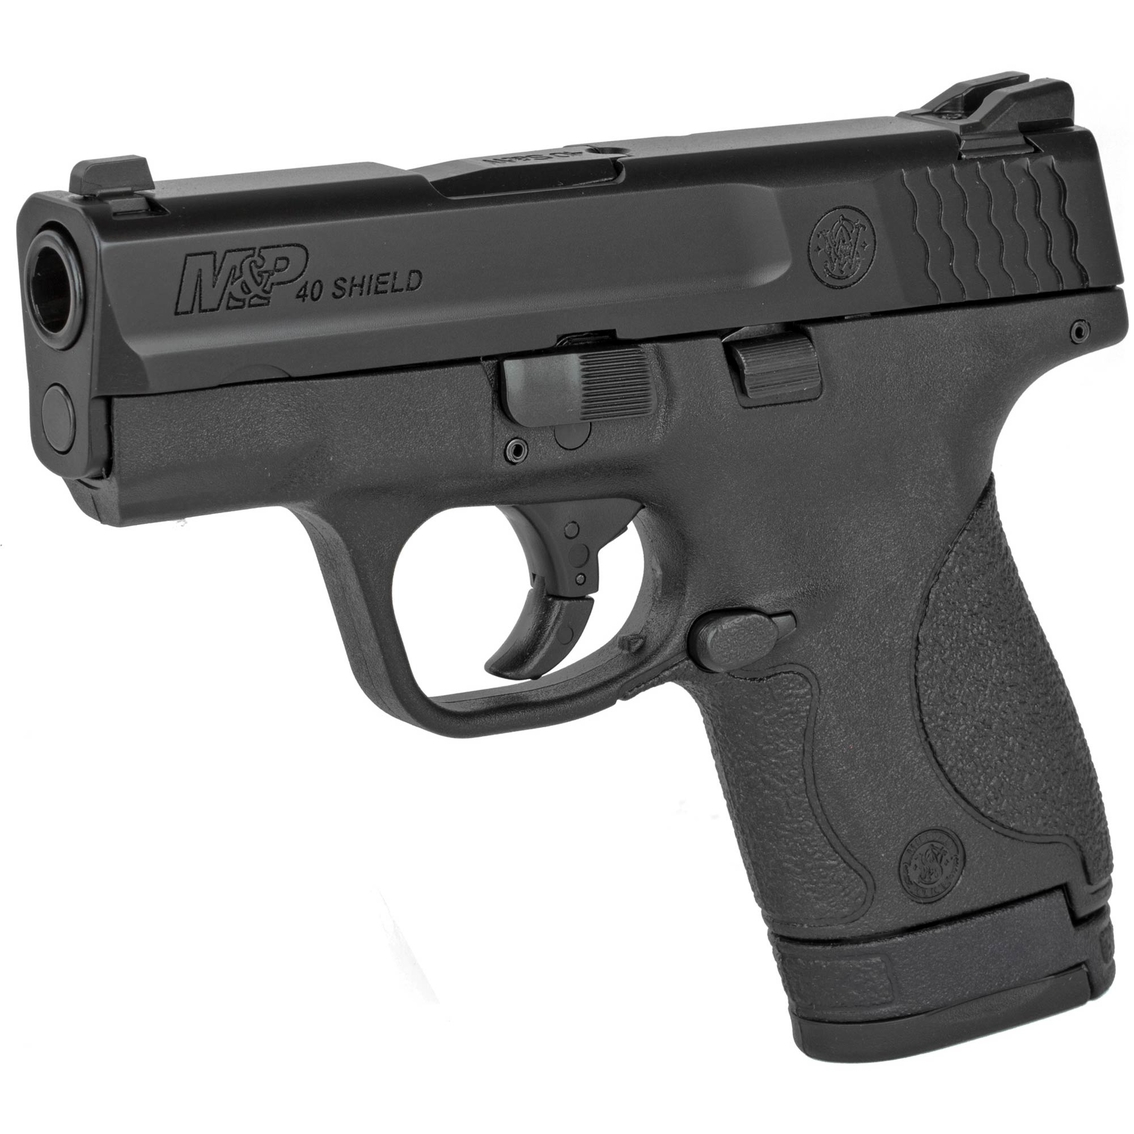 S&W Shield 40 S&W 3.1 in. Barrel 7 Rnd 2 Mag Pistol Black - Image 3 of 3